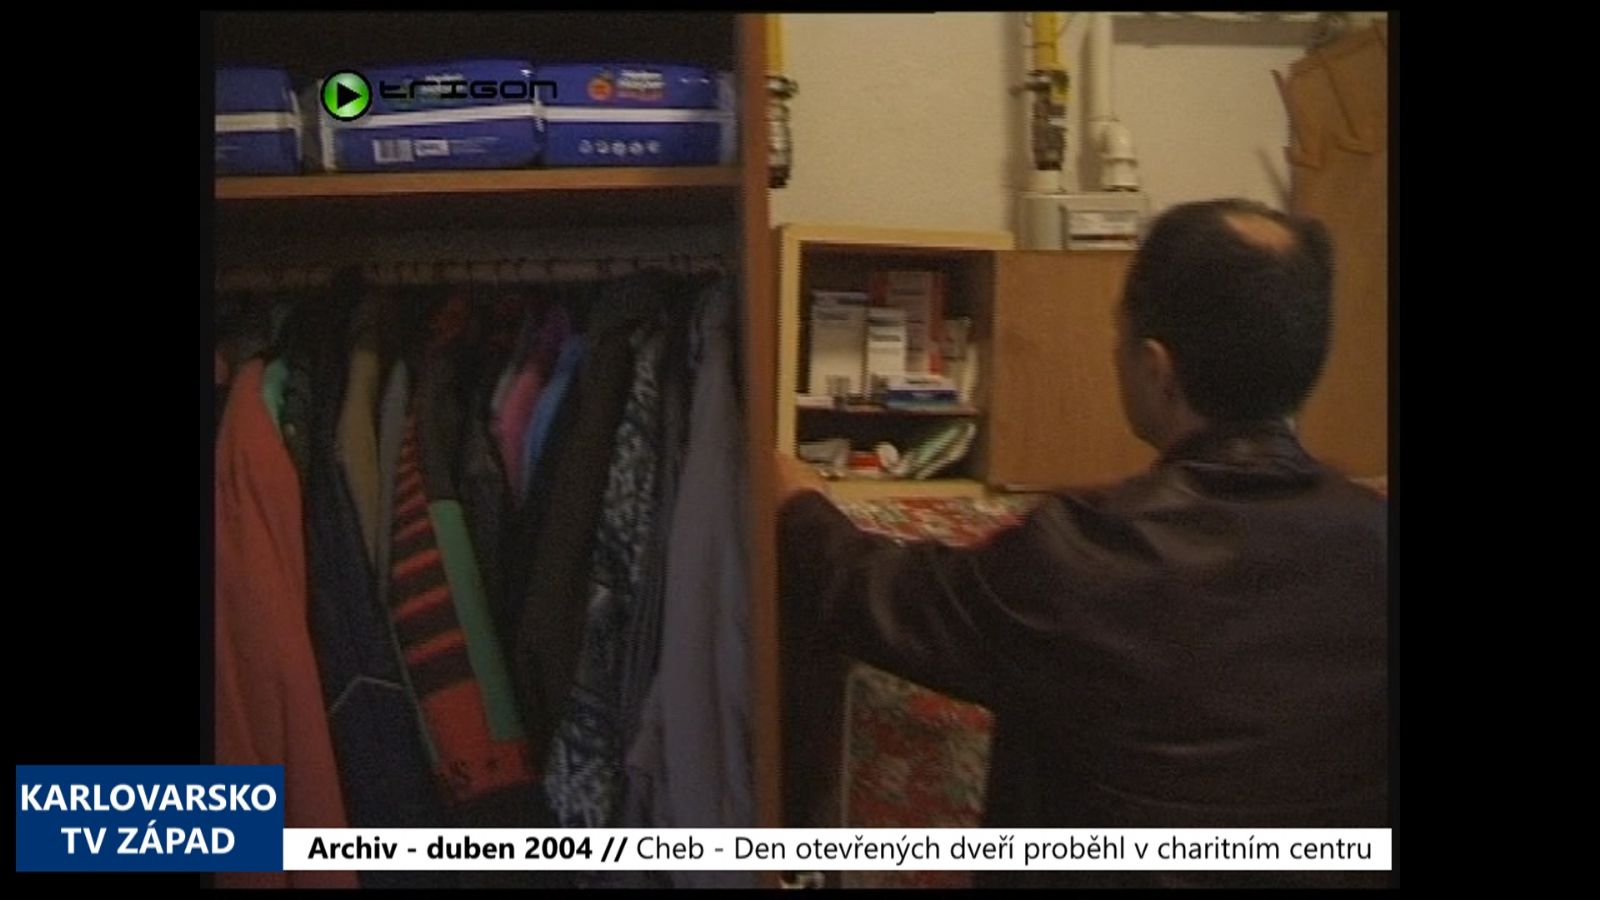 2004 – Cheb: Den otevřených dveří proběhl v charitním centru (TV Západ)